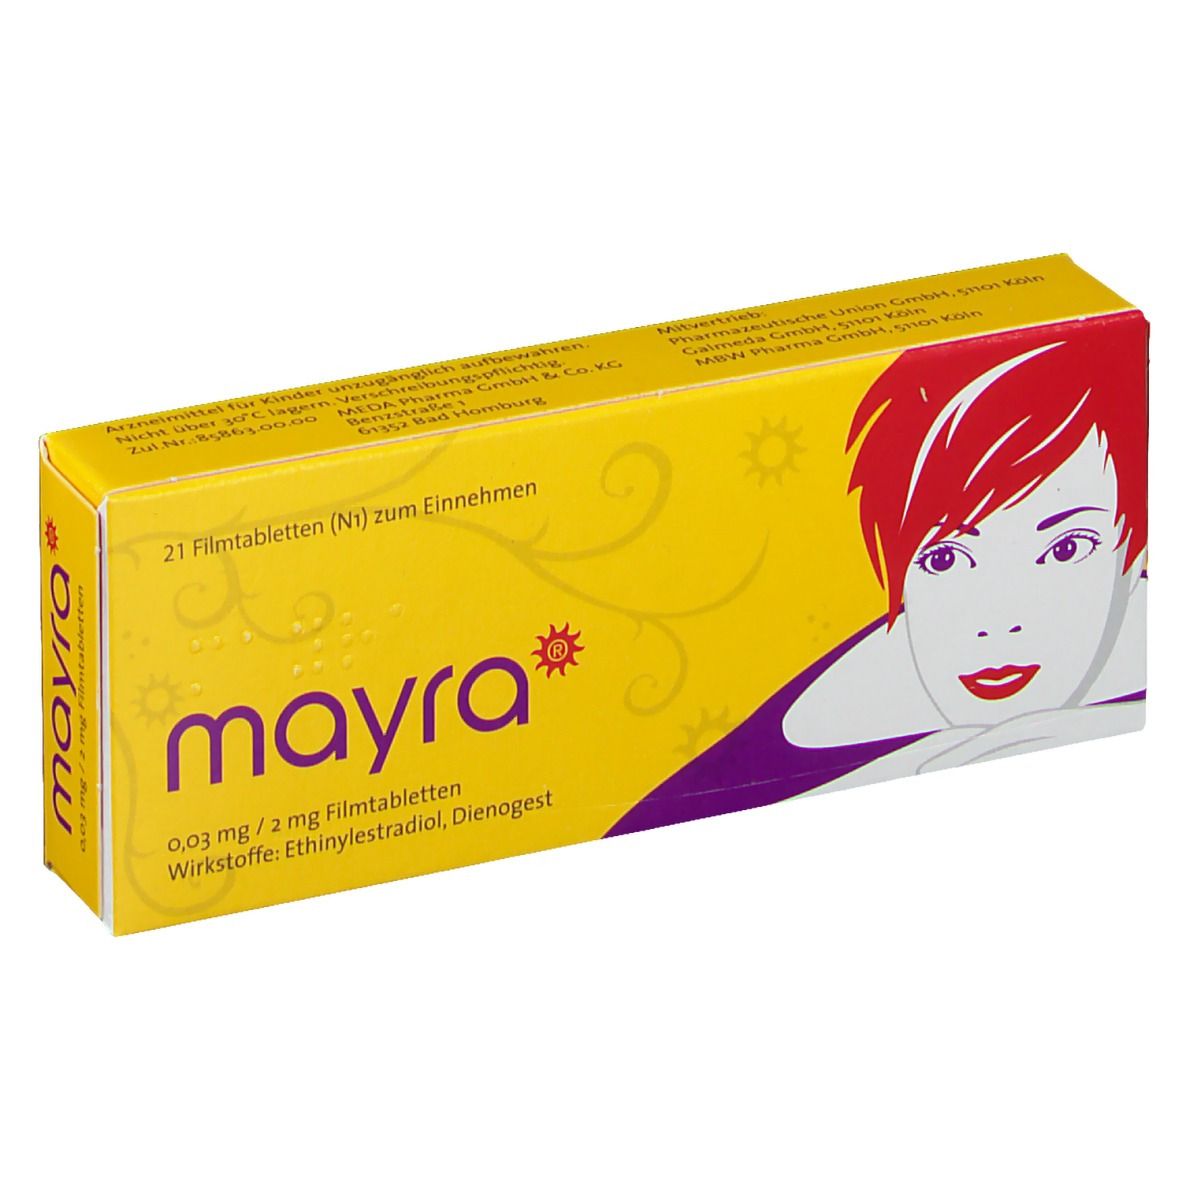 mayra® 0,03 mg/2 mg